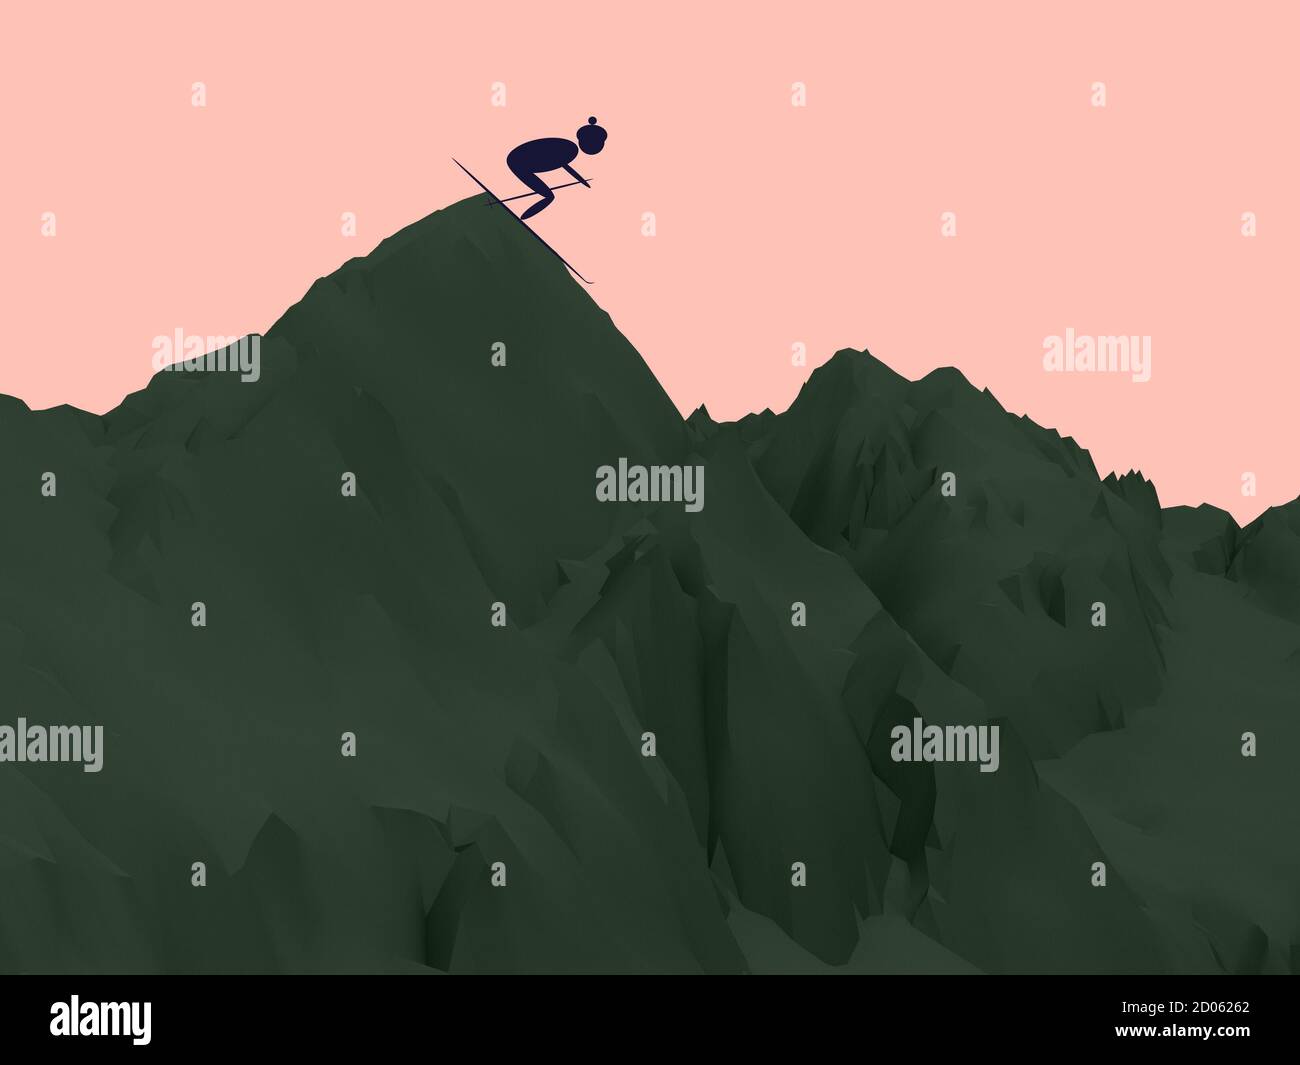 Dreidimensionale Darstellung von dunkelgrünen Berg auf pfirsichrosa Hintergrund. Einfache Illustration des purpurnen Skifahrers auf dem Gipfel des Berges. 3D-Konzeptkunst Stockfoto